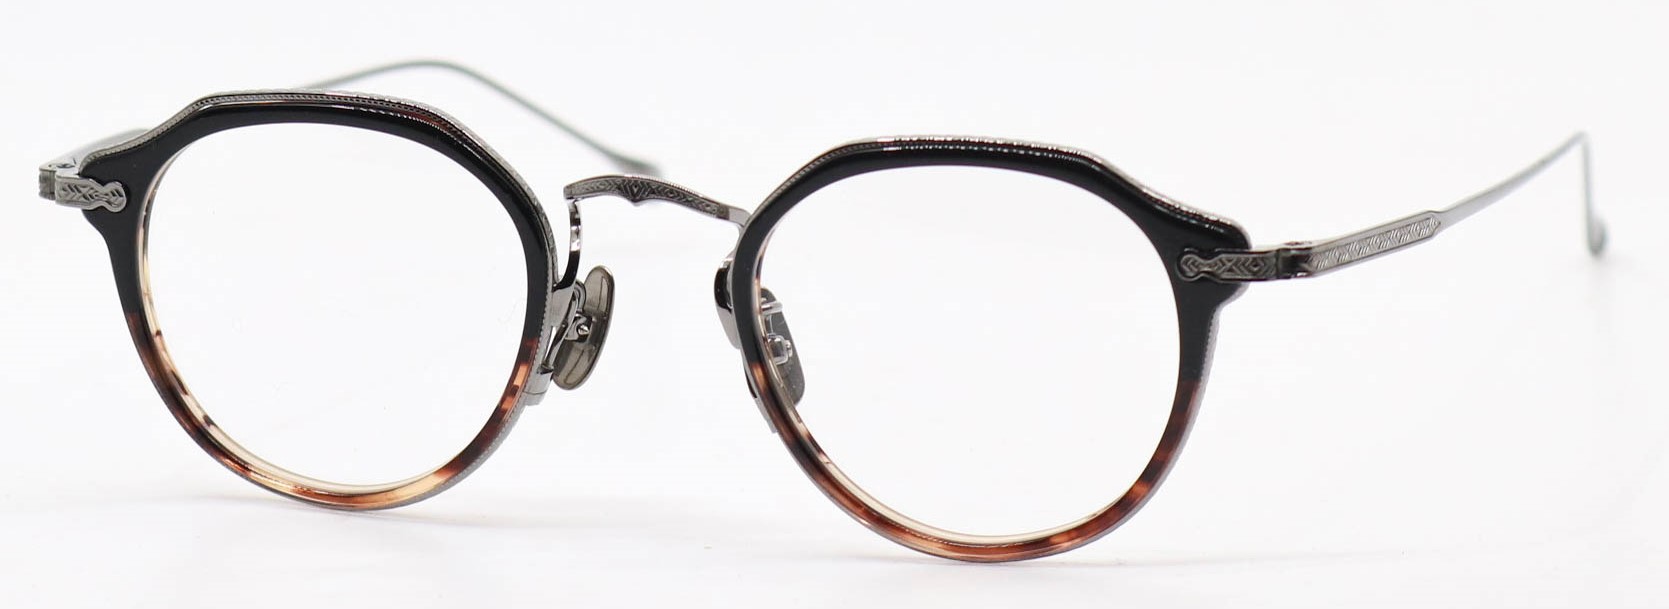 眼鏡のカラータイプC-5 Black-BrownSasa.Half/Gray